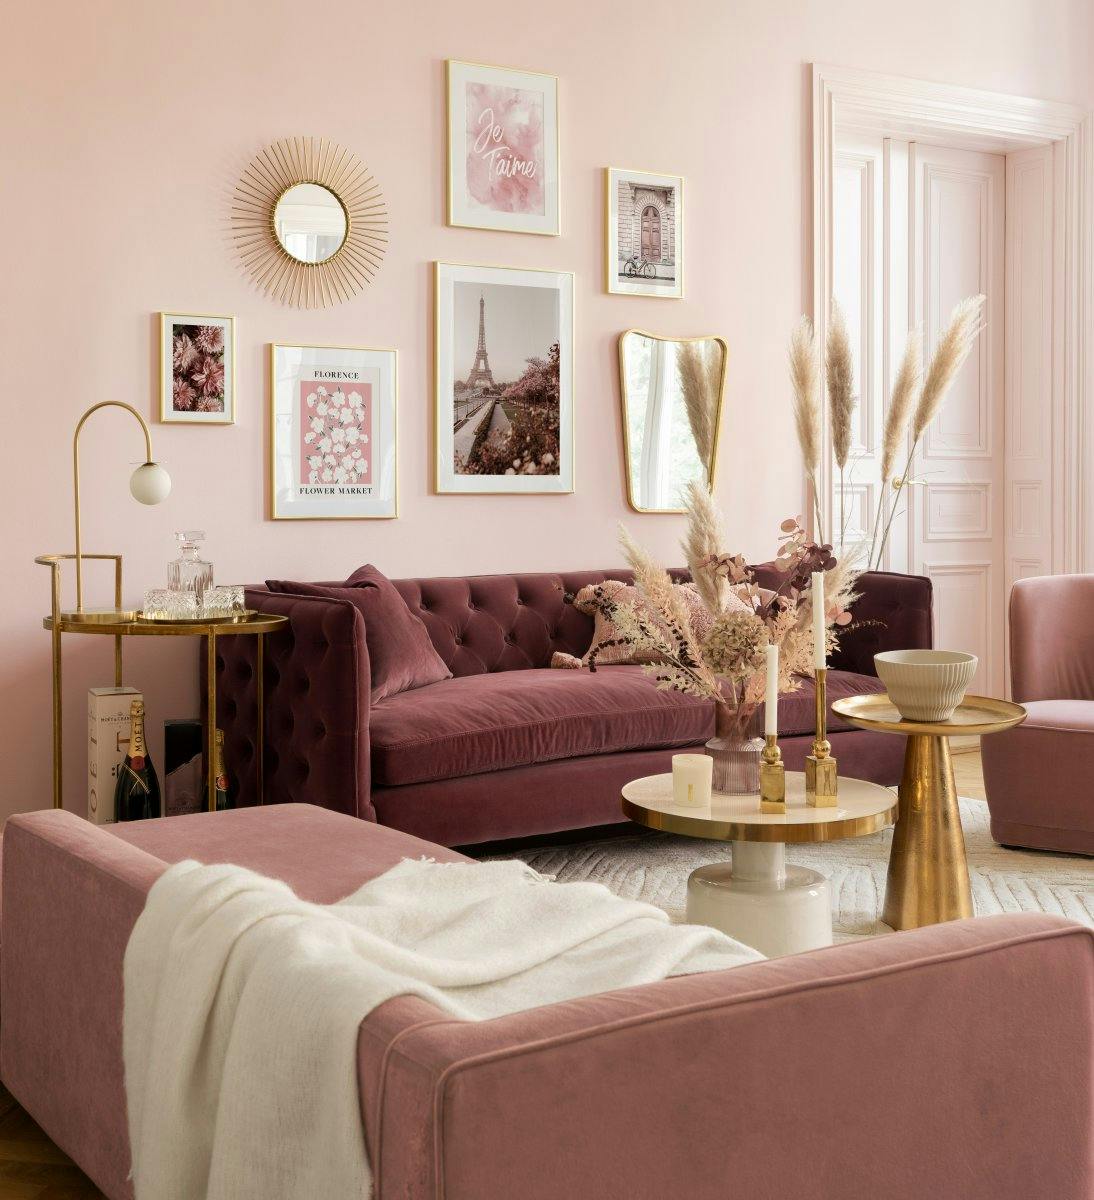 リビングルーム用の金色のフレームが付いたピンクのロマンチックなパリのギャラリーの壁